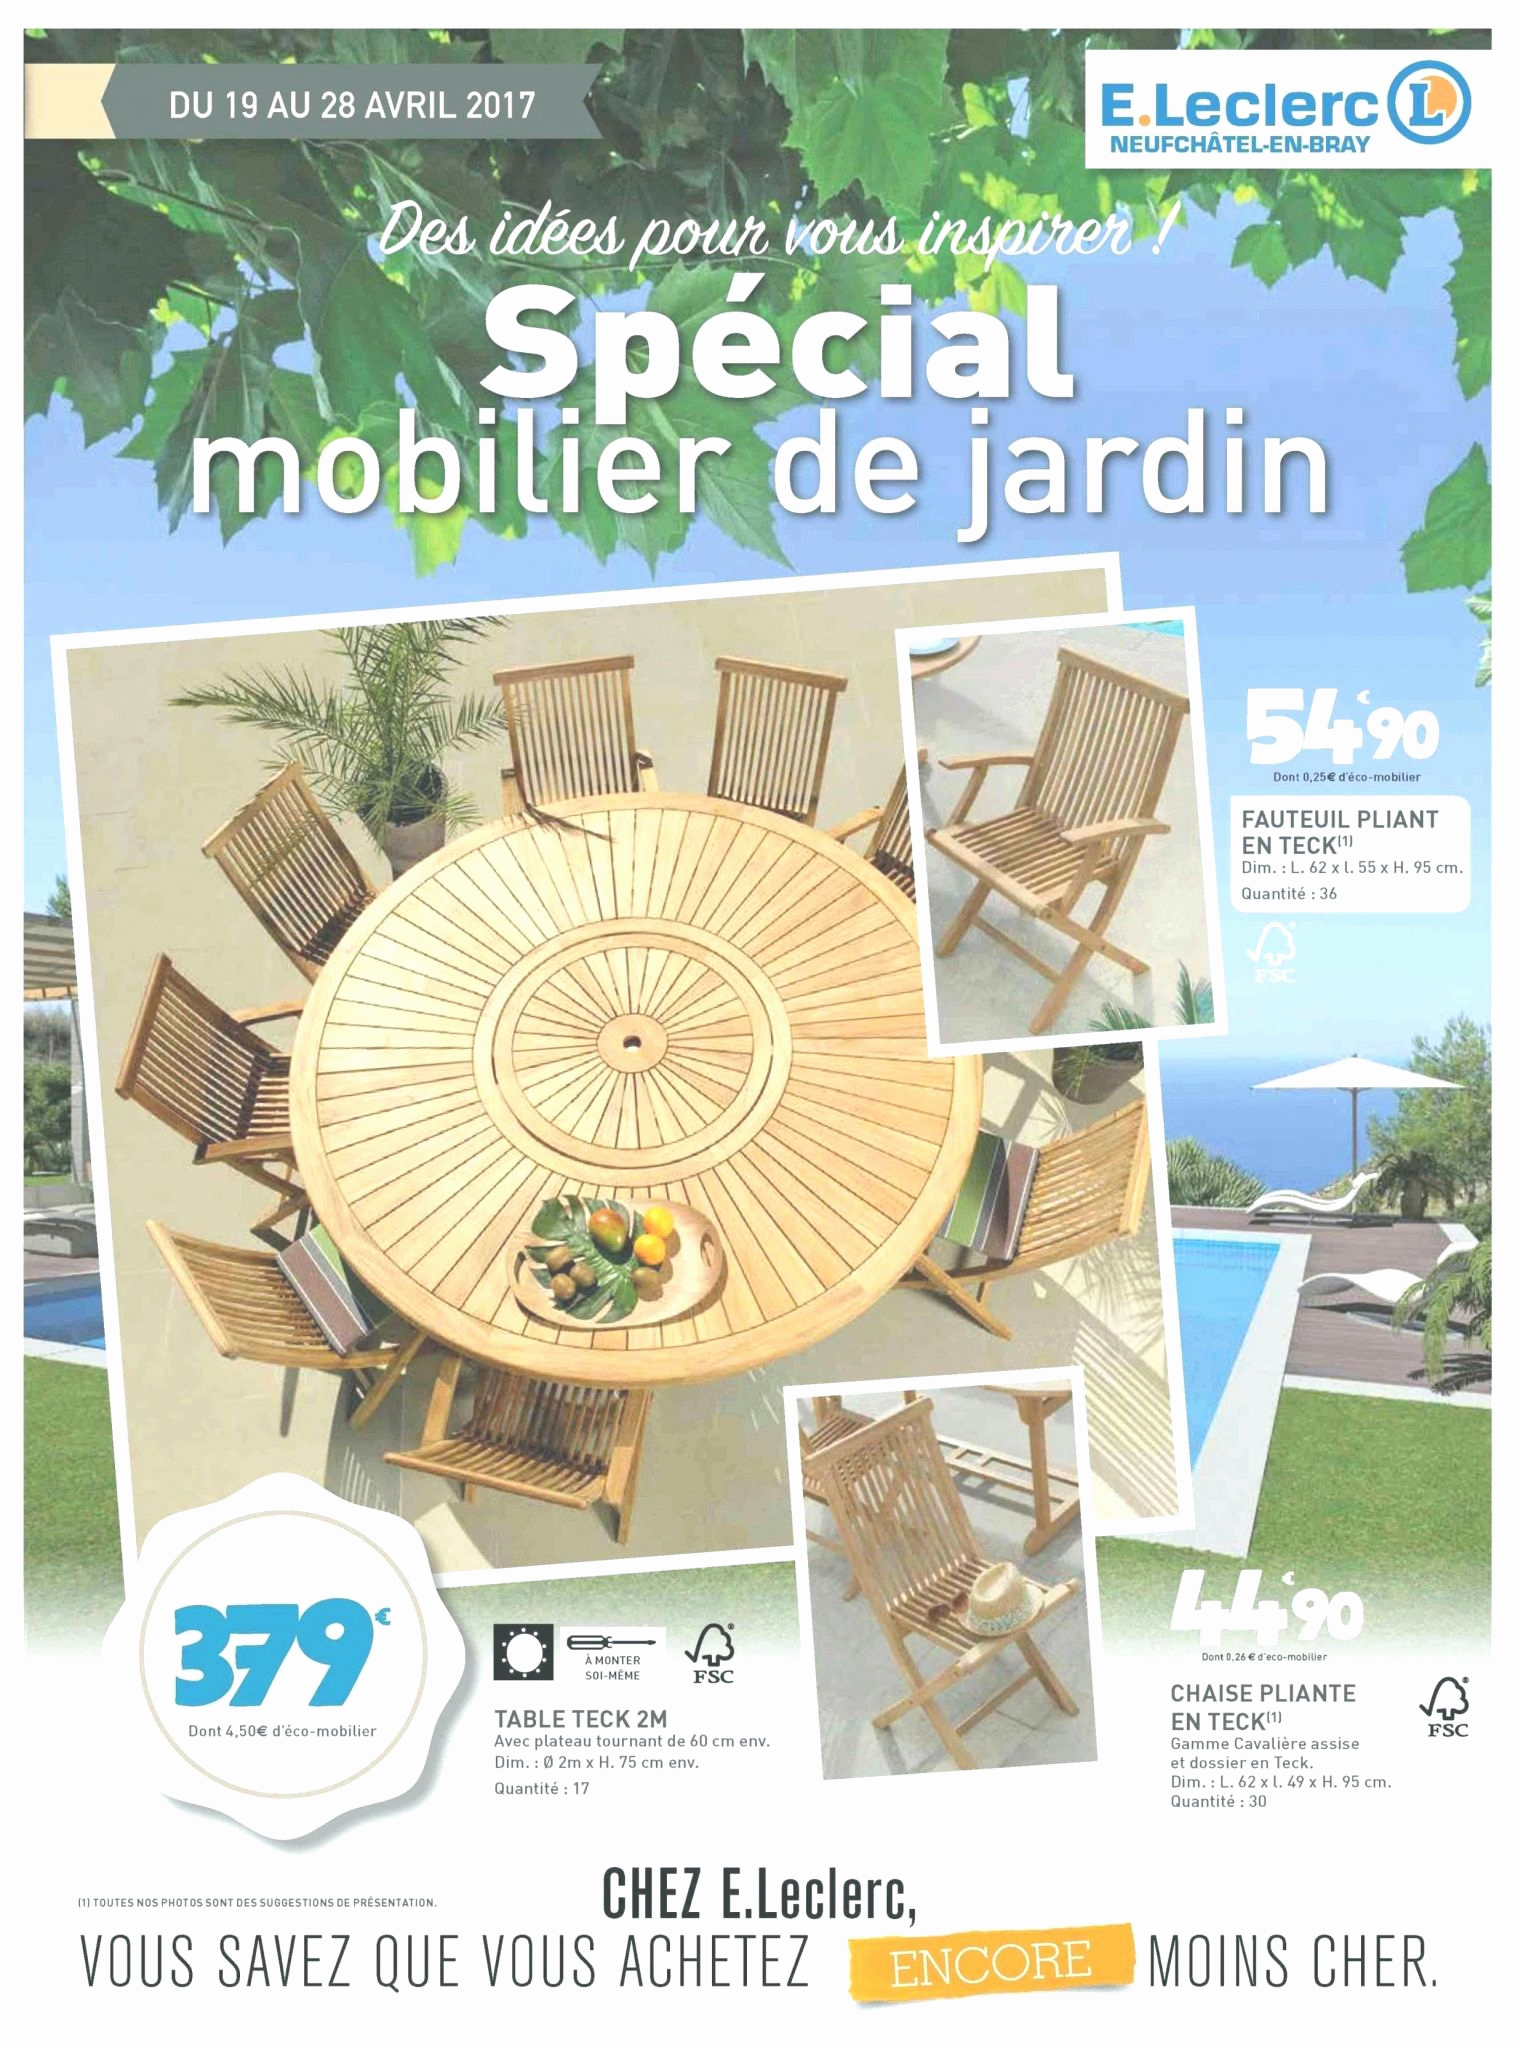 Salon De Jardin 4 Personnes Nouveau Salon De Jardin Leclerc Catalogue 2017 Le Meilleur De Table